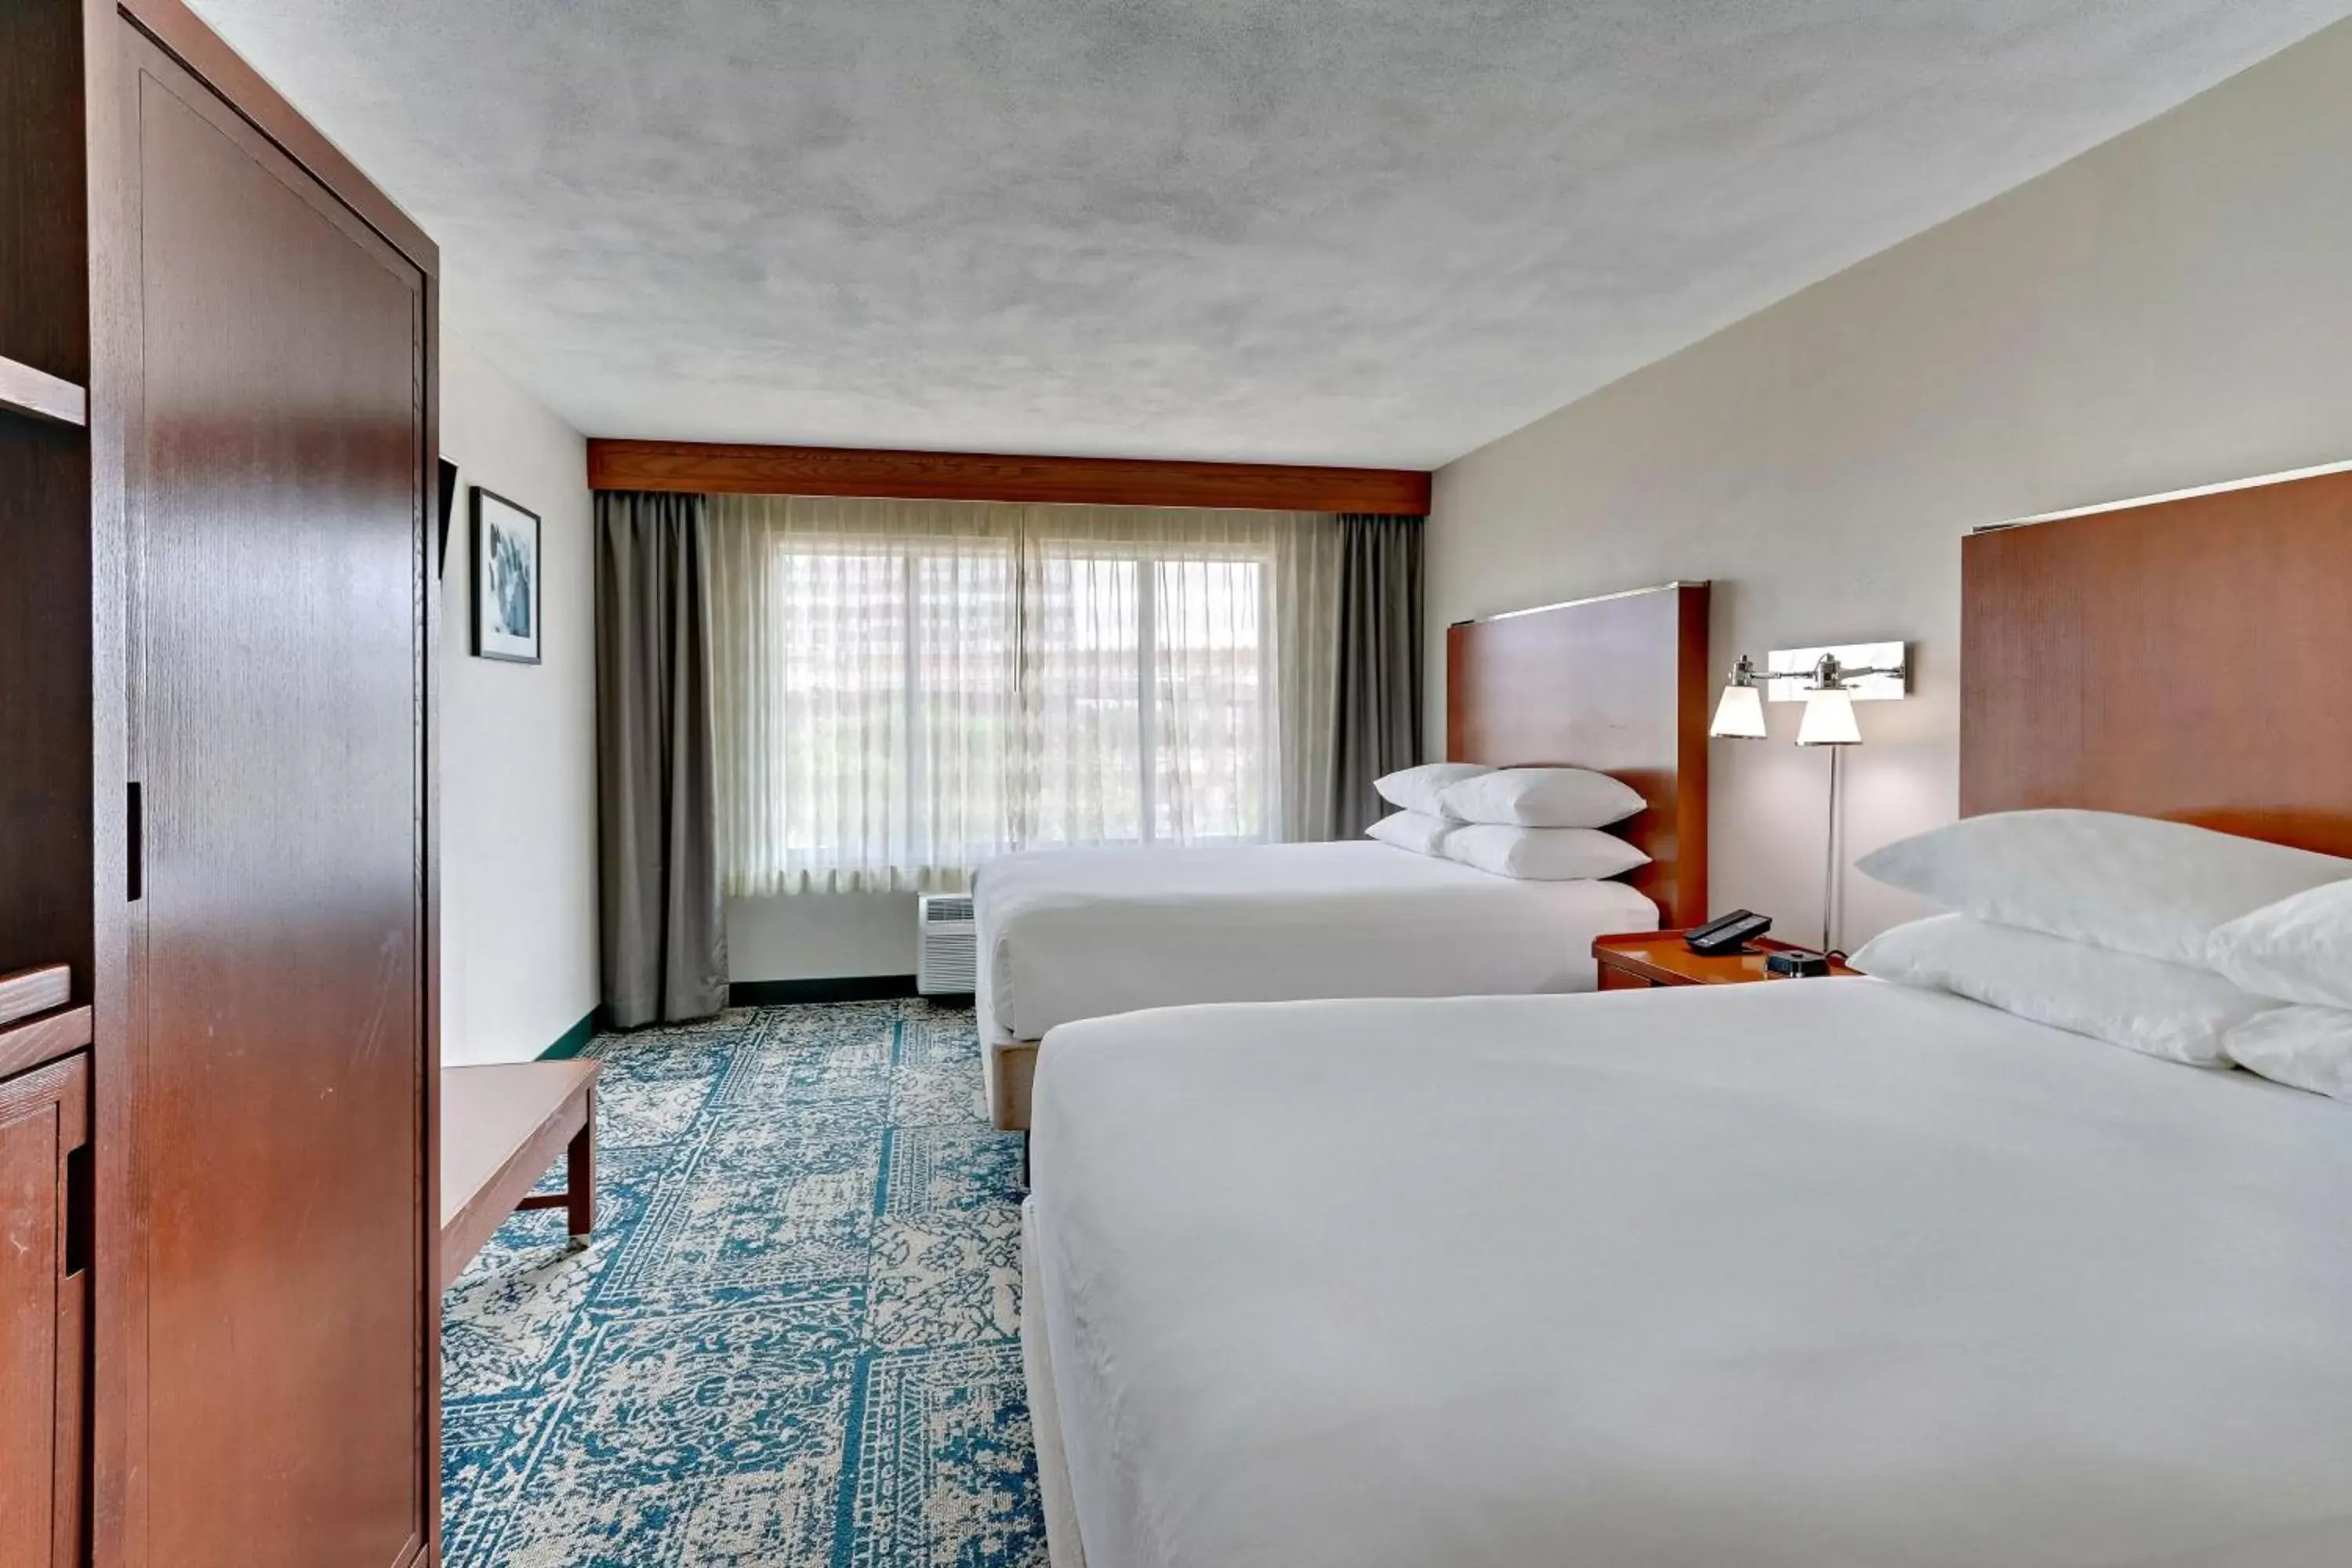 Bedroom in Drury Inn & Suites San Antonio Airport